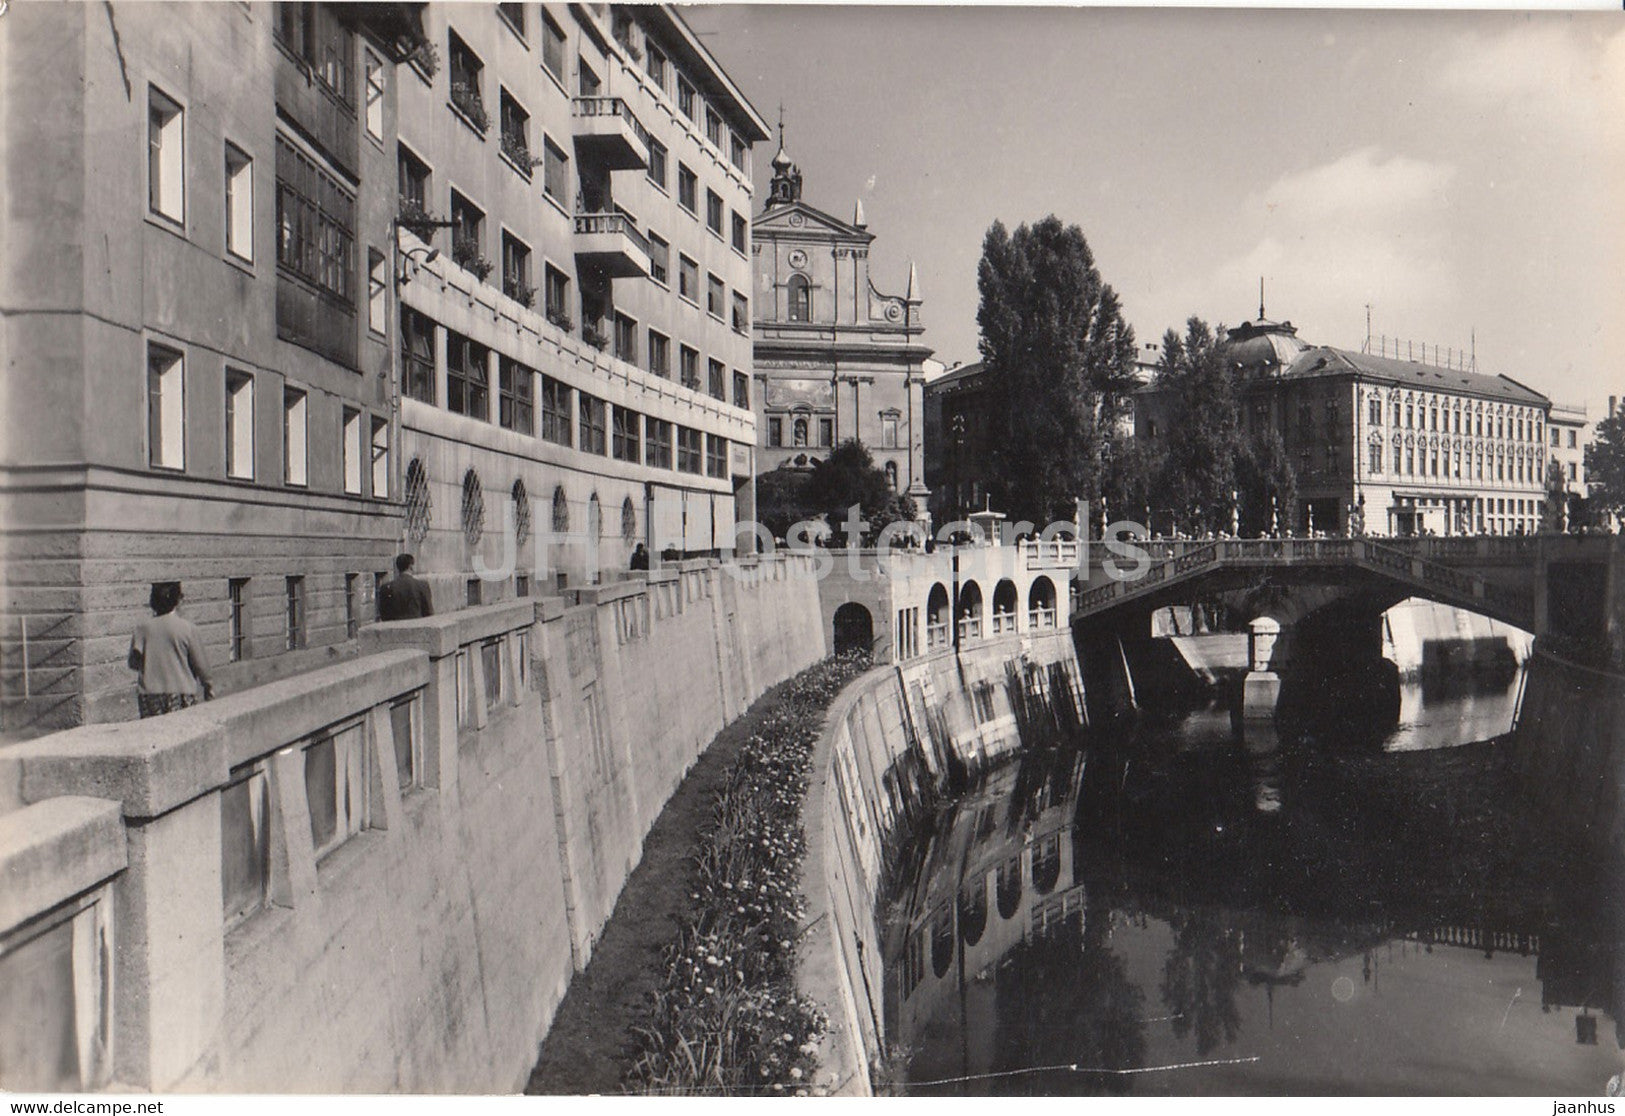 Ljubljana - City view - river - 2506 - 1960 - Yugoslavia - Slovenia - used - JH Postcards